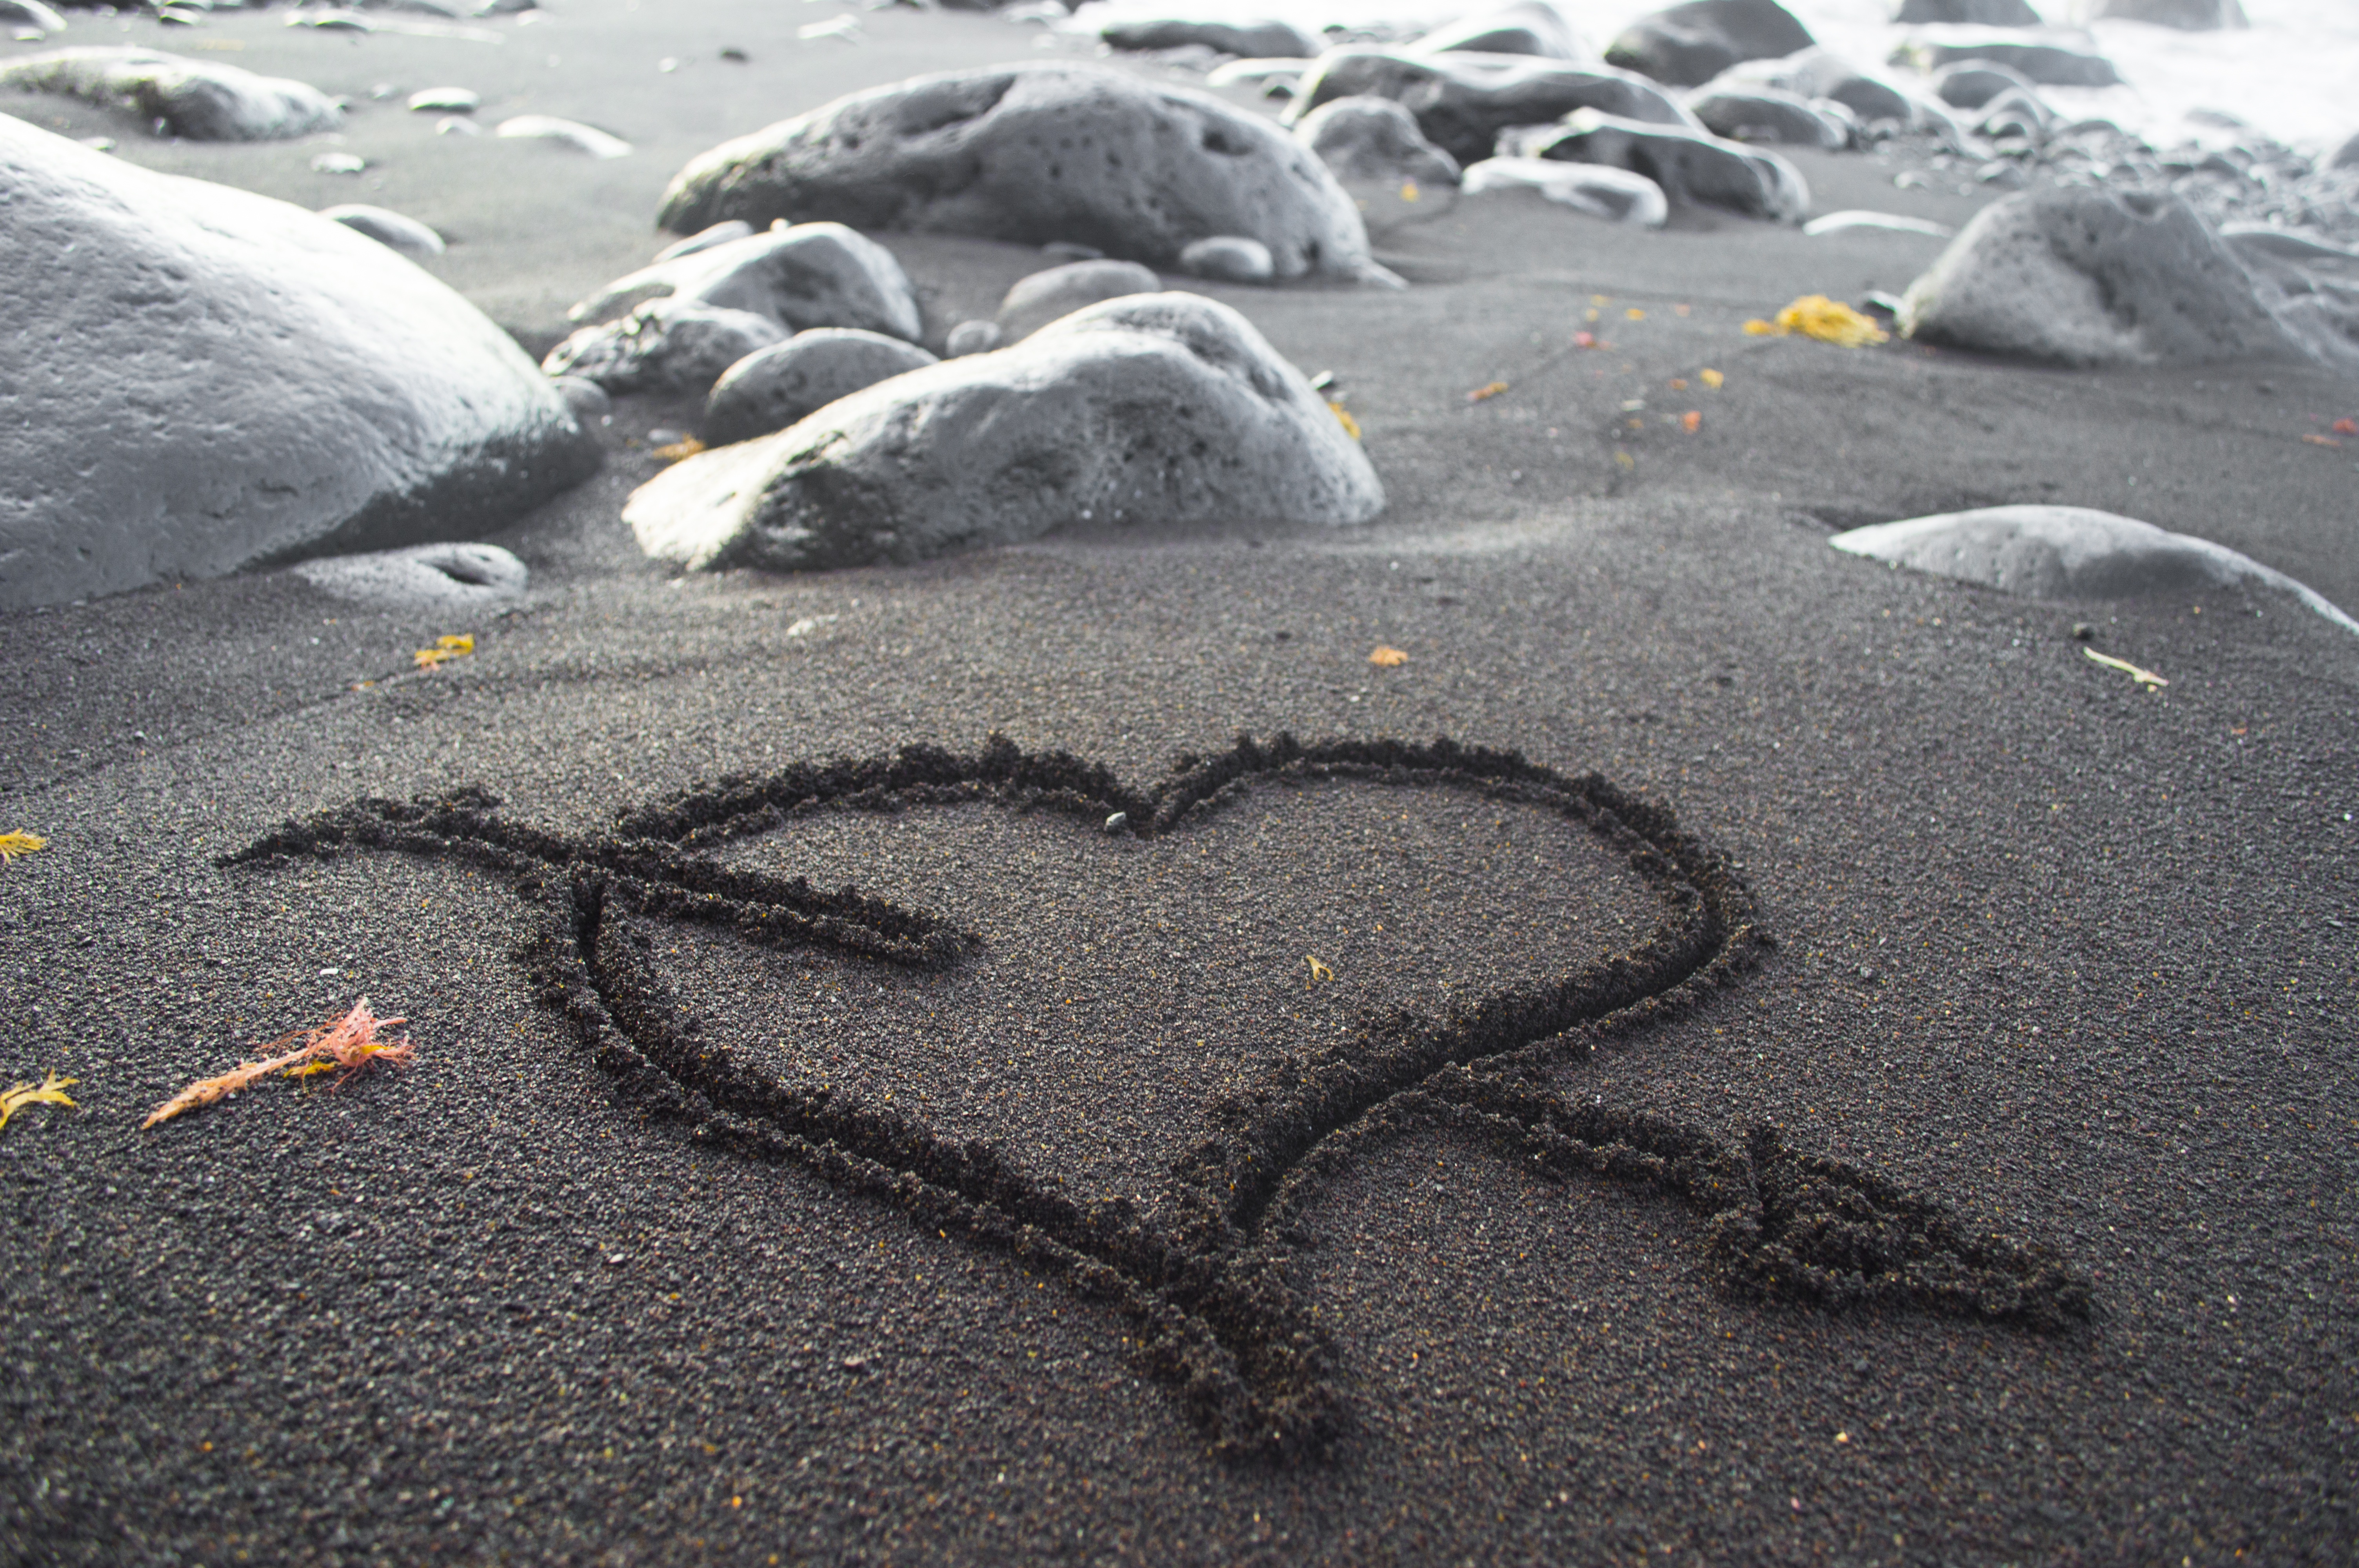 Сердце на песке фото у моря